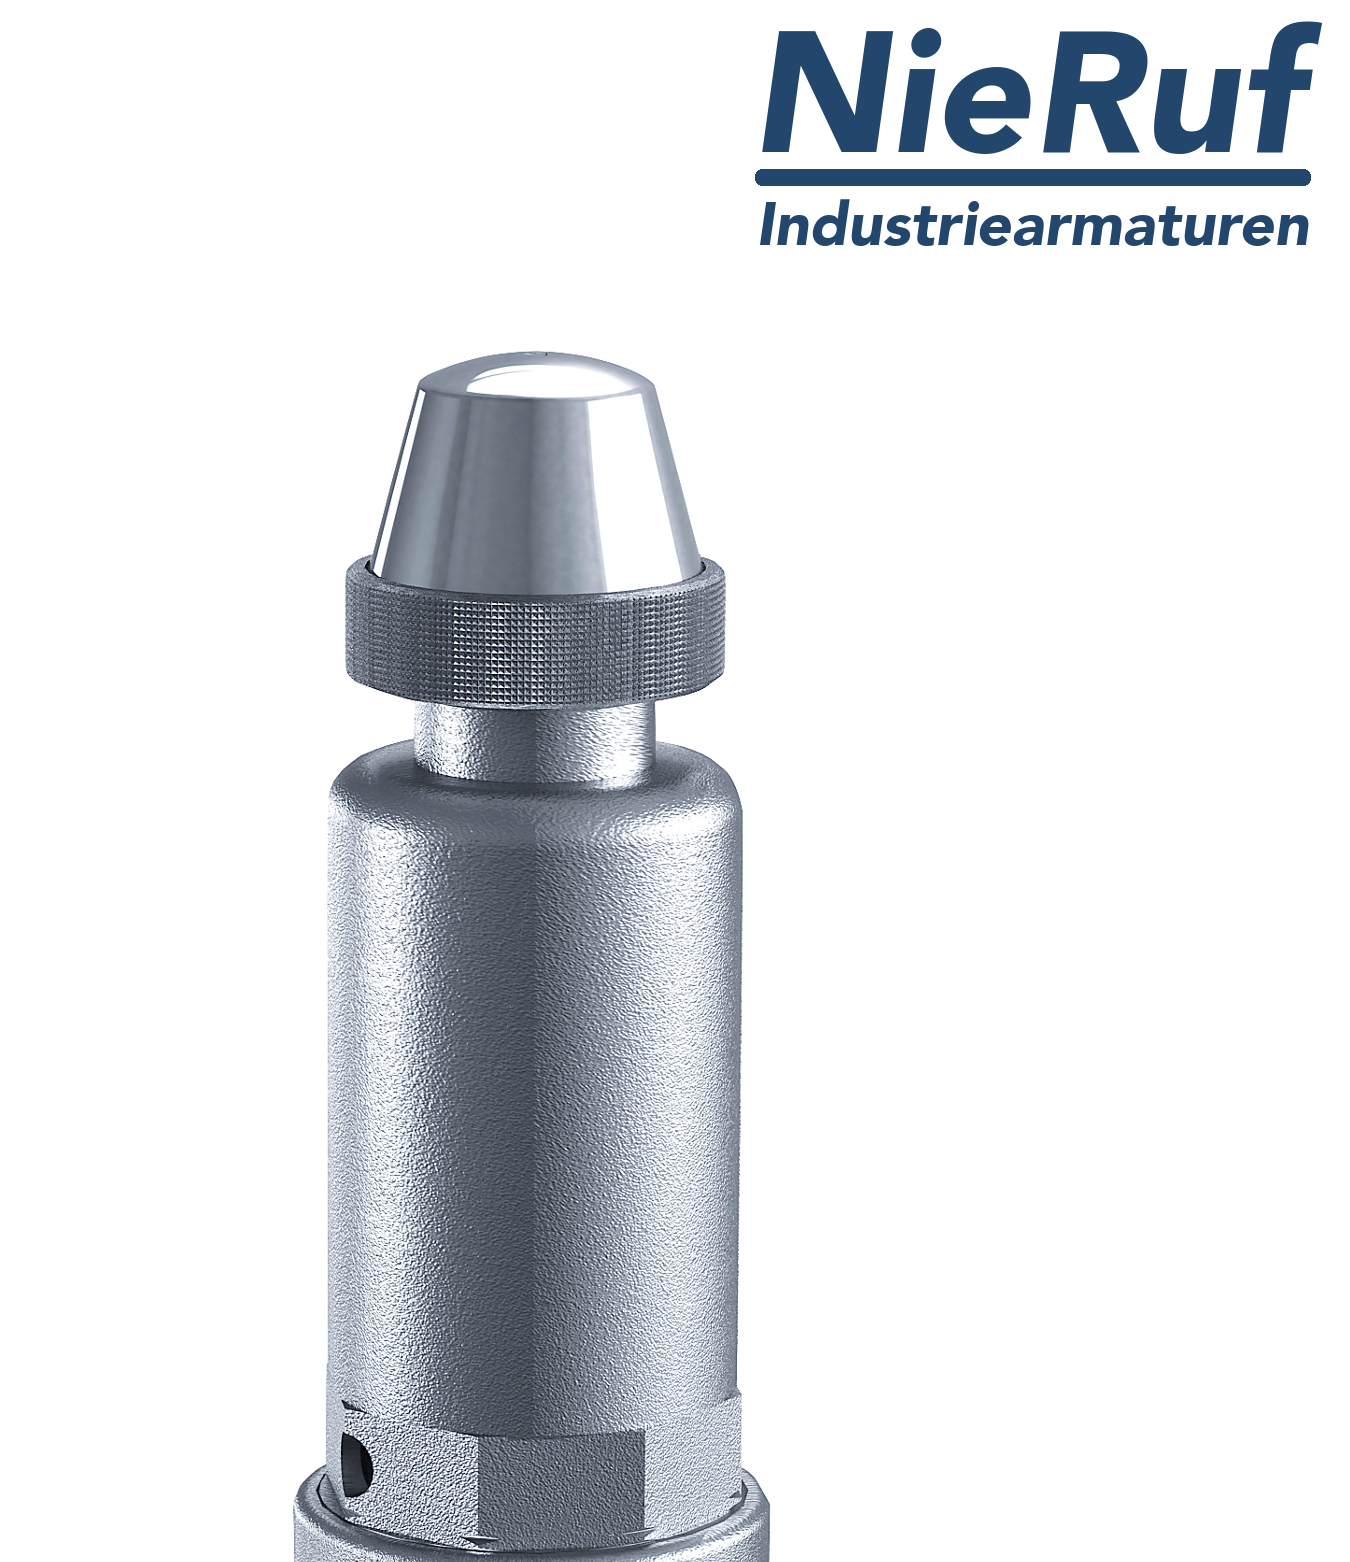 valvola di sicurezza 1 1/4" x 2" F SV05 fluidi liquidi neutri, acciaio inox NBR